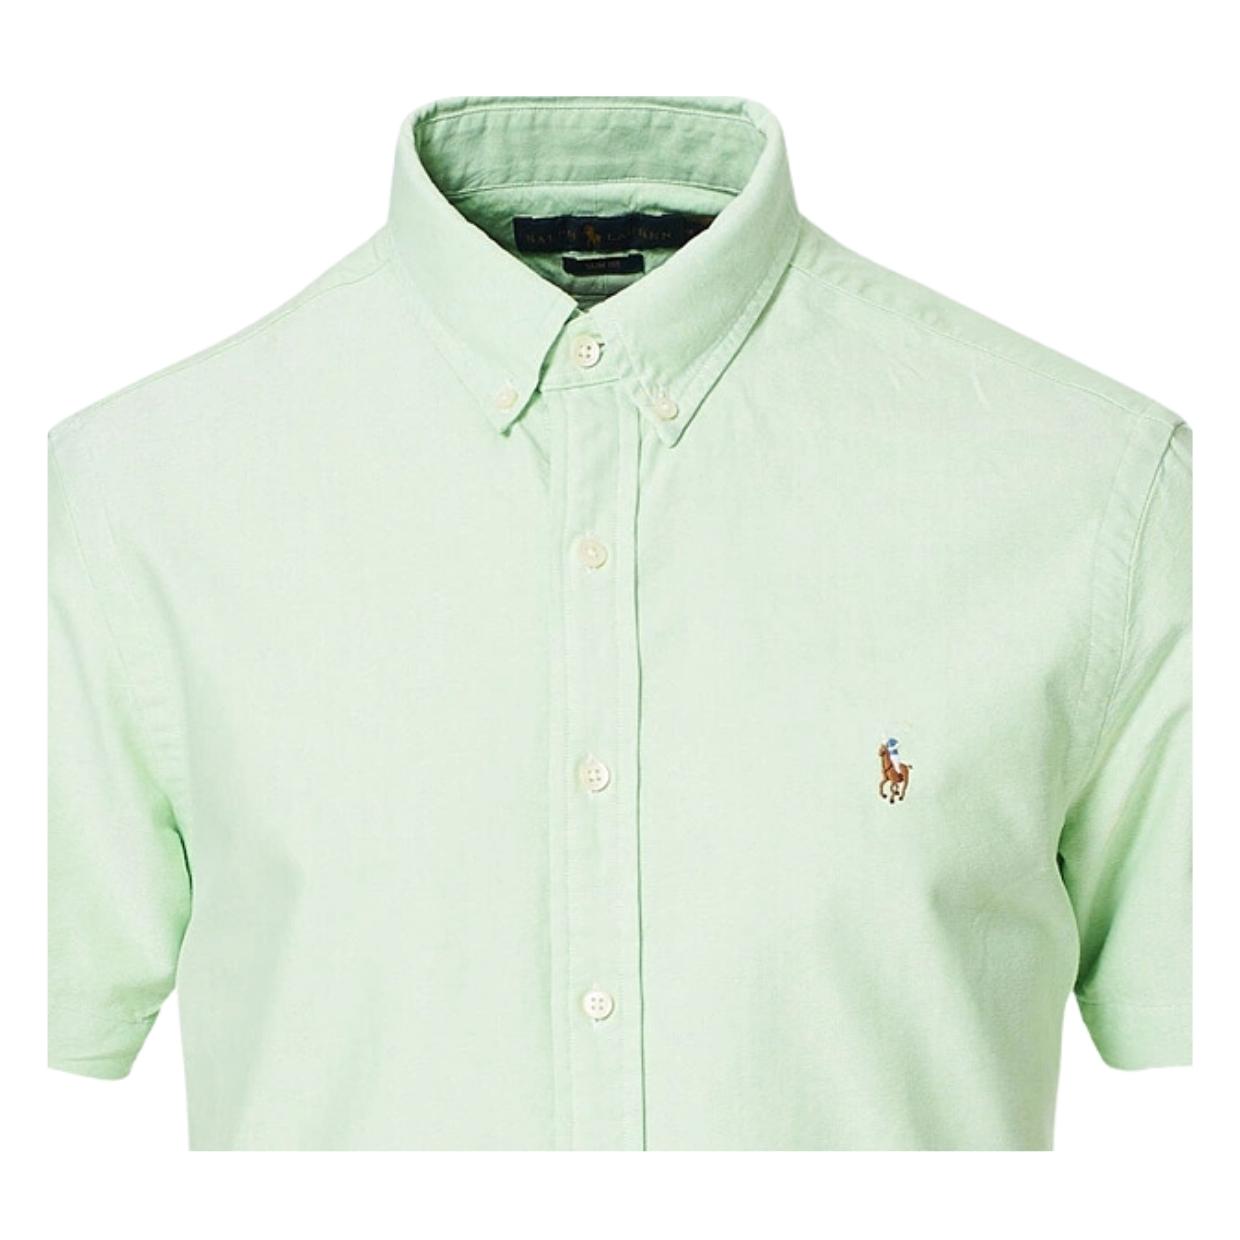 Polo Ralph Lauren Embroidered Logo Green Short Sleeve Shirt